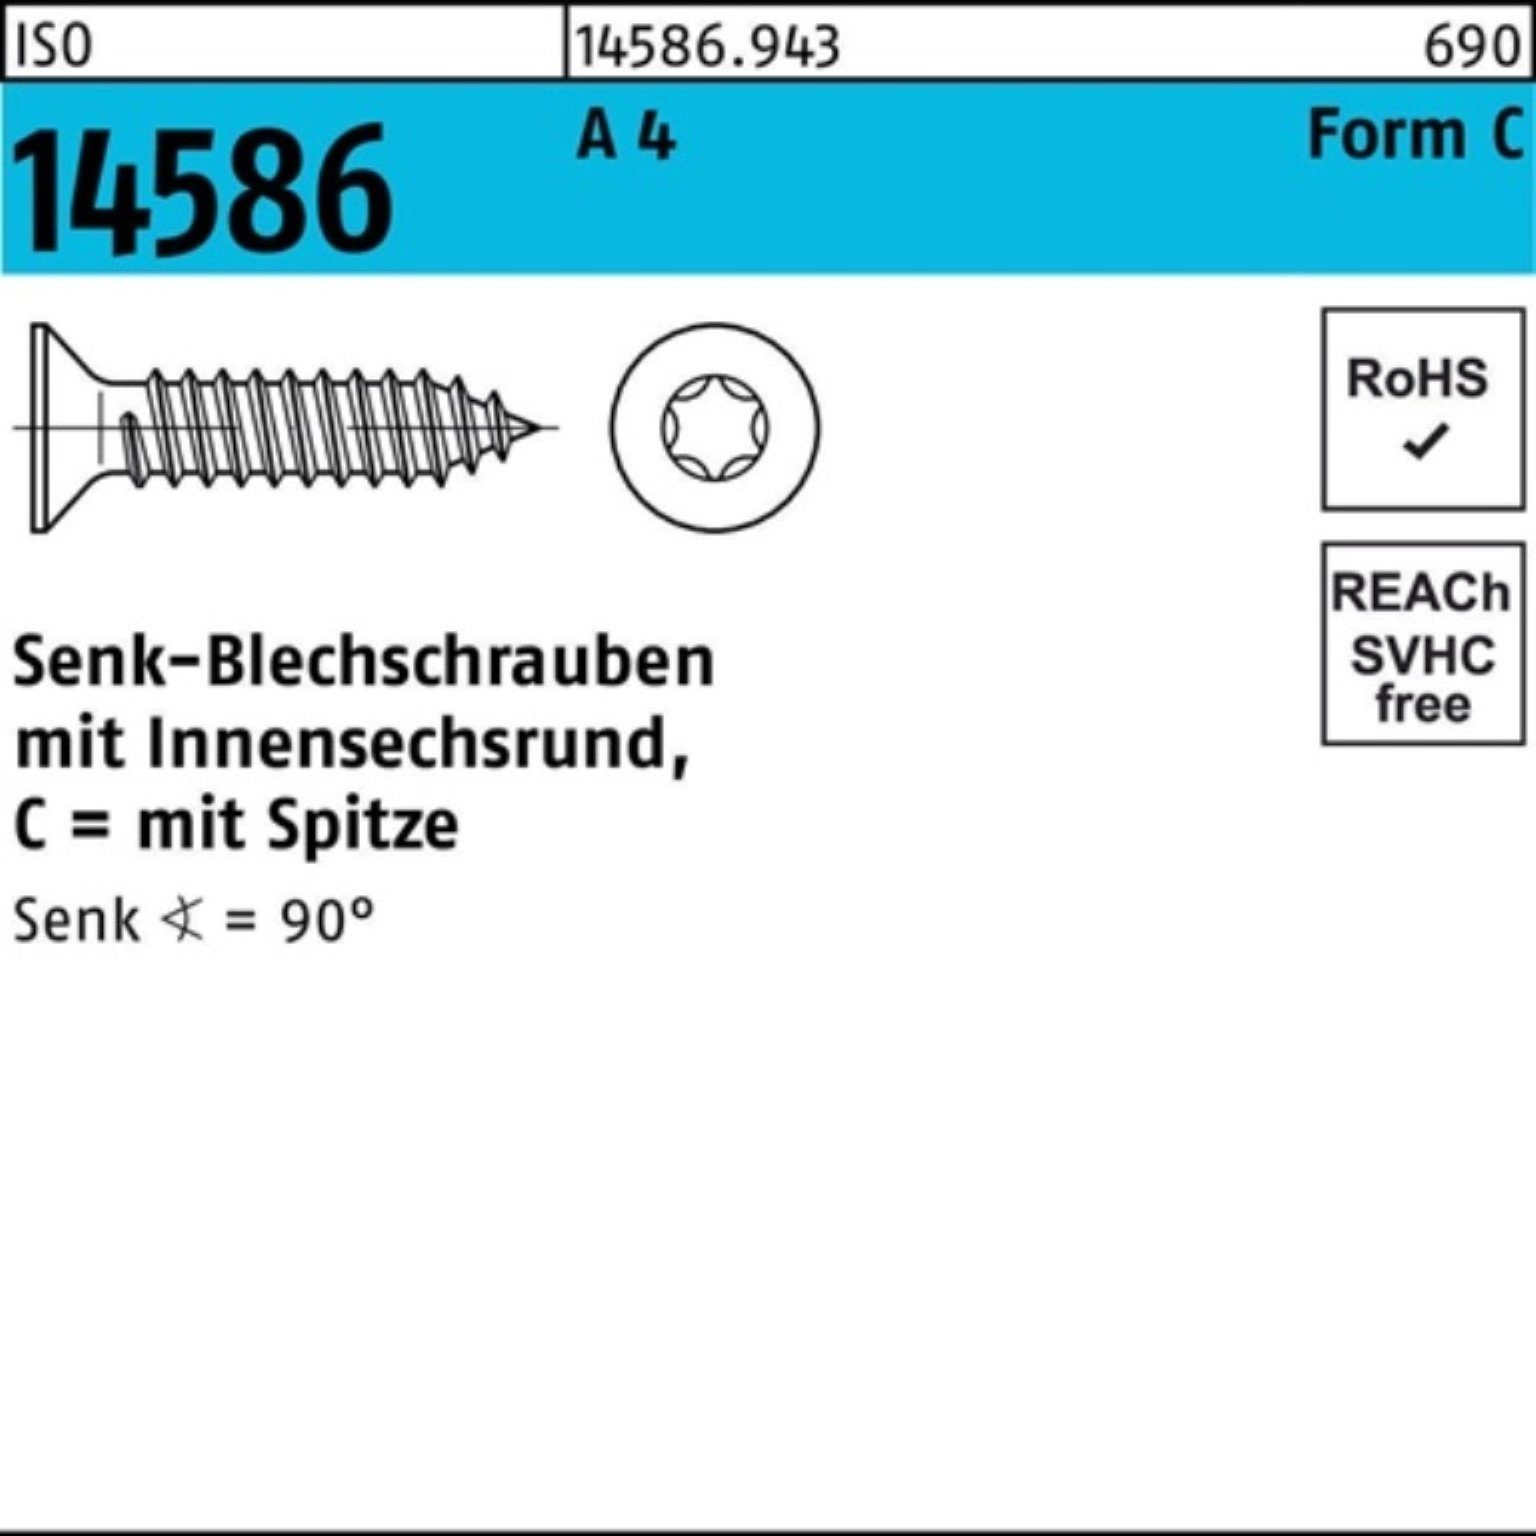 Pack 14586 ISO 4 32-T15 ISR/Spitze Reyher Schraube A 500er 500 Senkblechschraube 3,9x